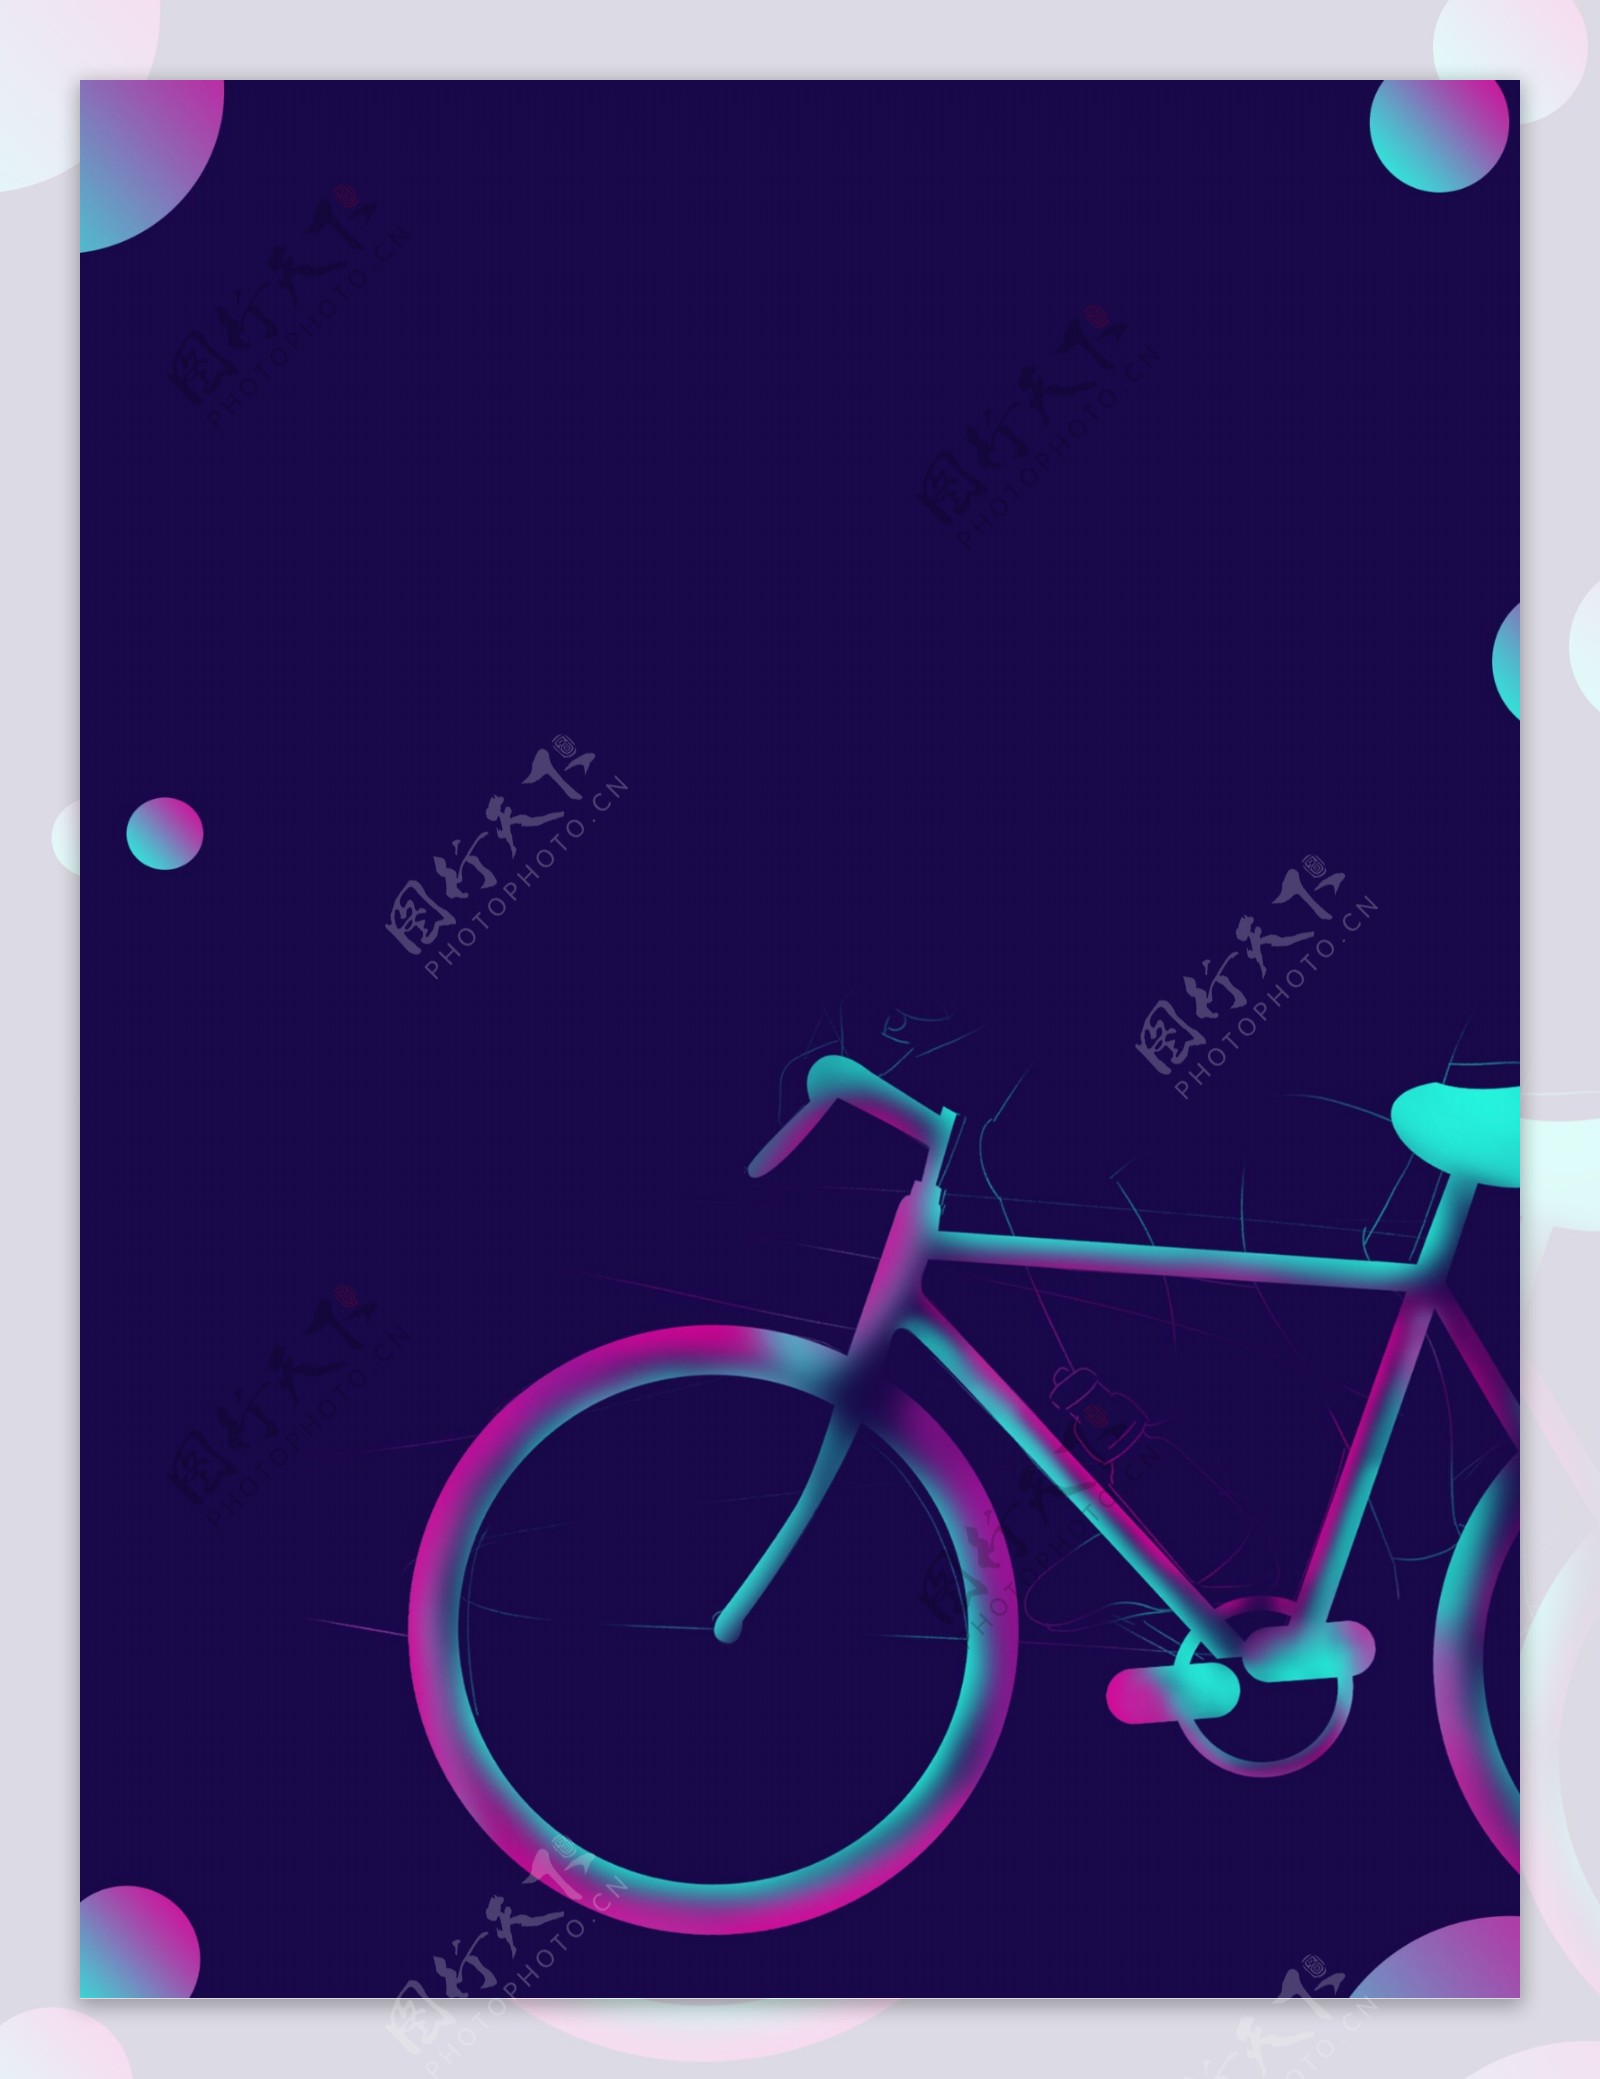 壁纸 紫色自行车 5120x2880 UHD 5K 高清壁纸, 图片, 照片